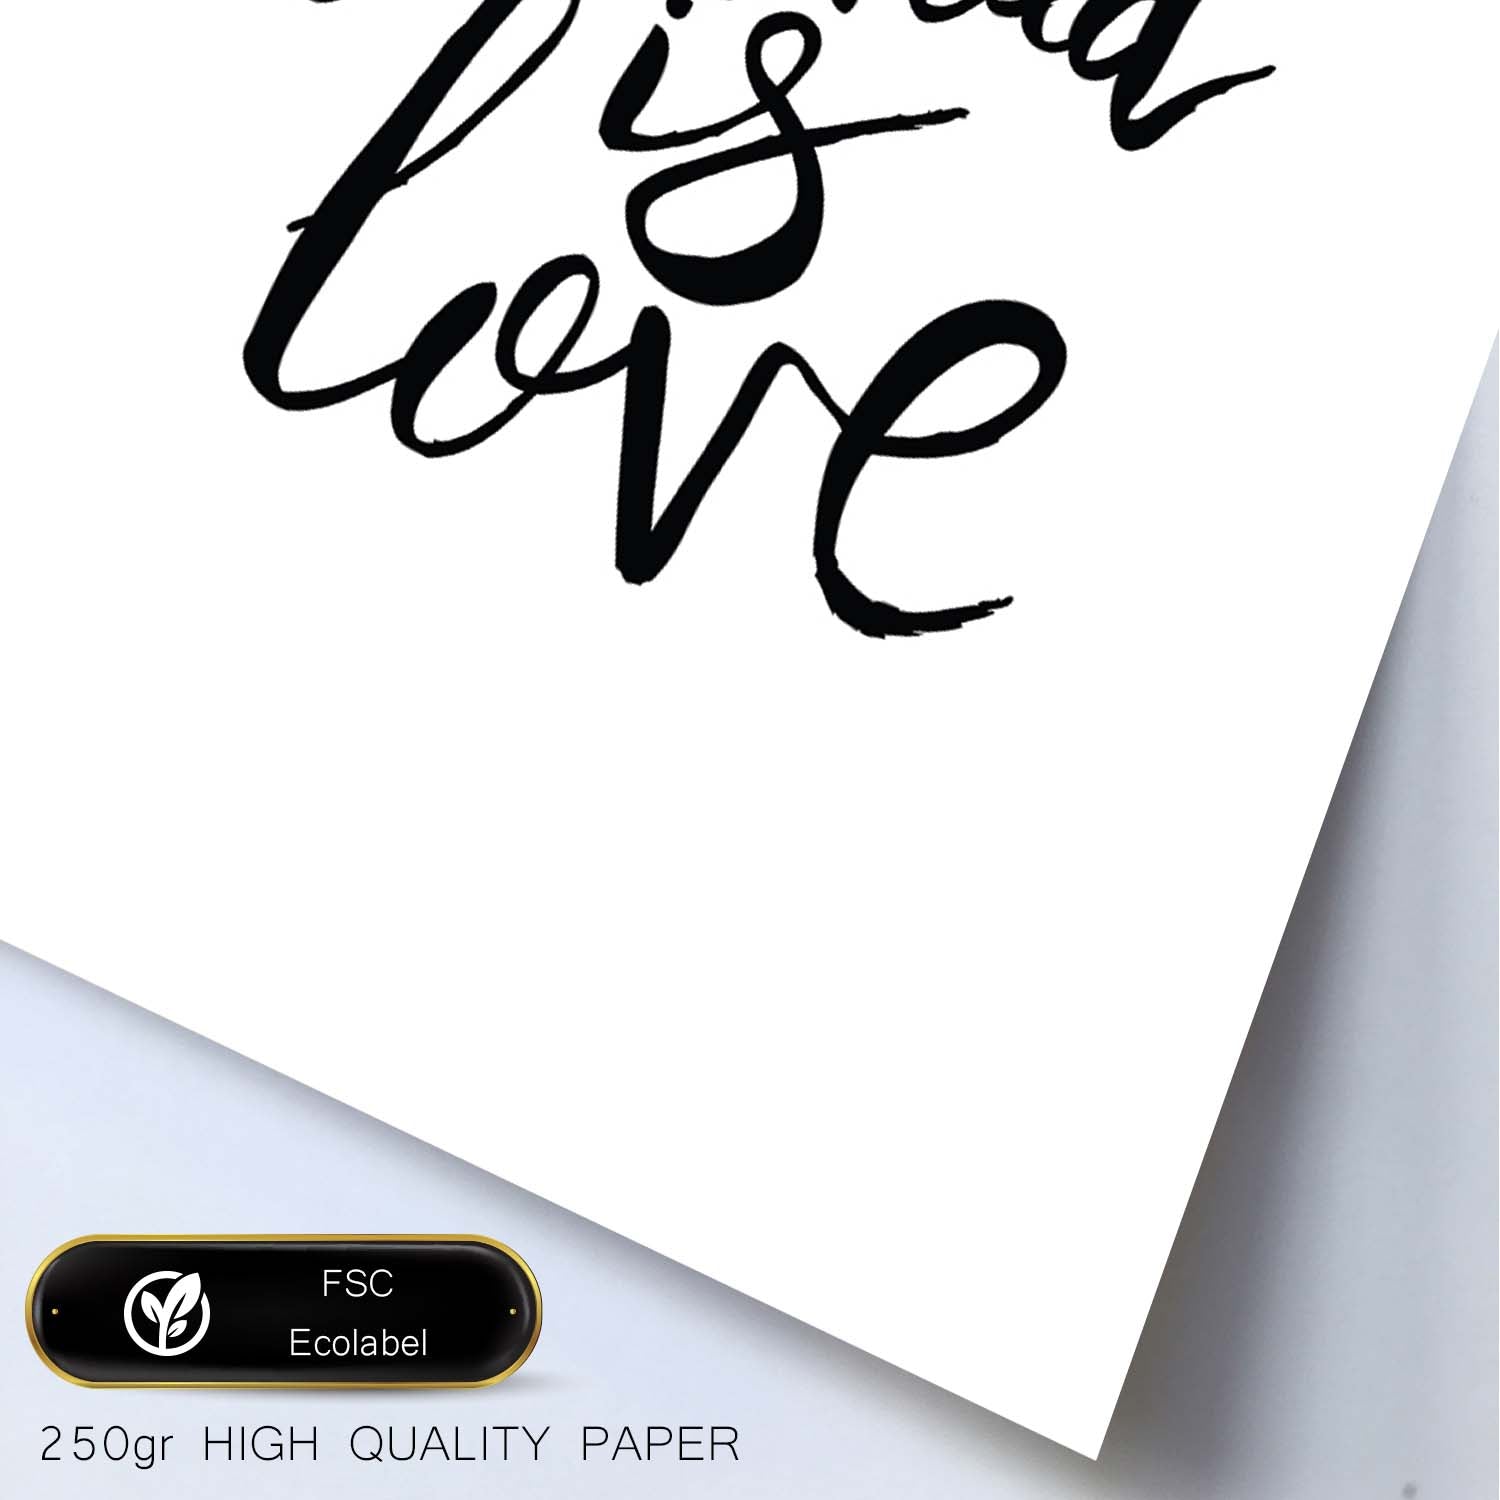 Lámina con mensajes felices en blanco y negro.Poster 'Todo Lo Que Necesitas Es Amor'-Artwork-Nacnic-Nacnic Estudio SL